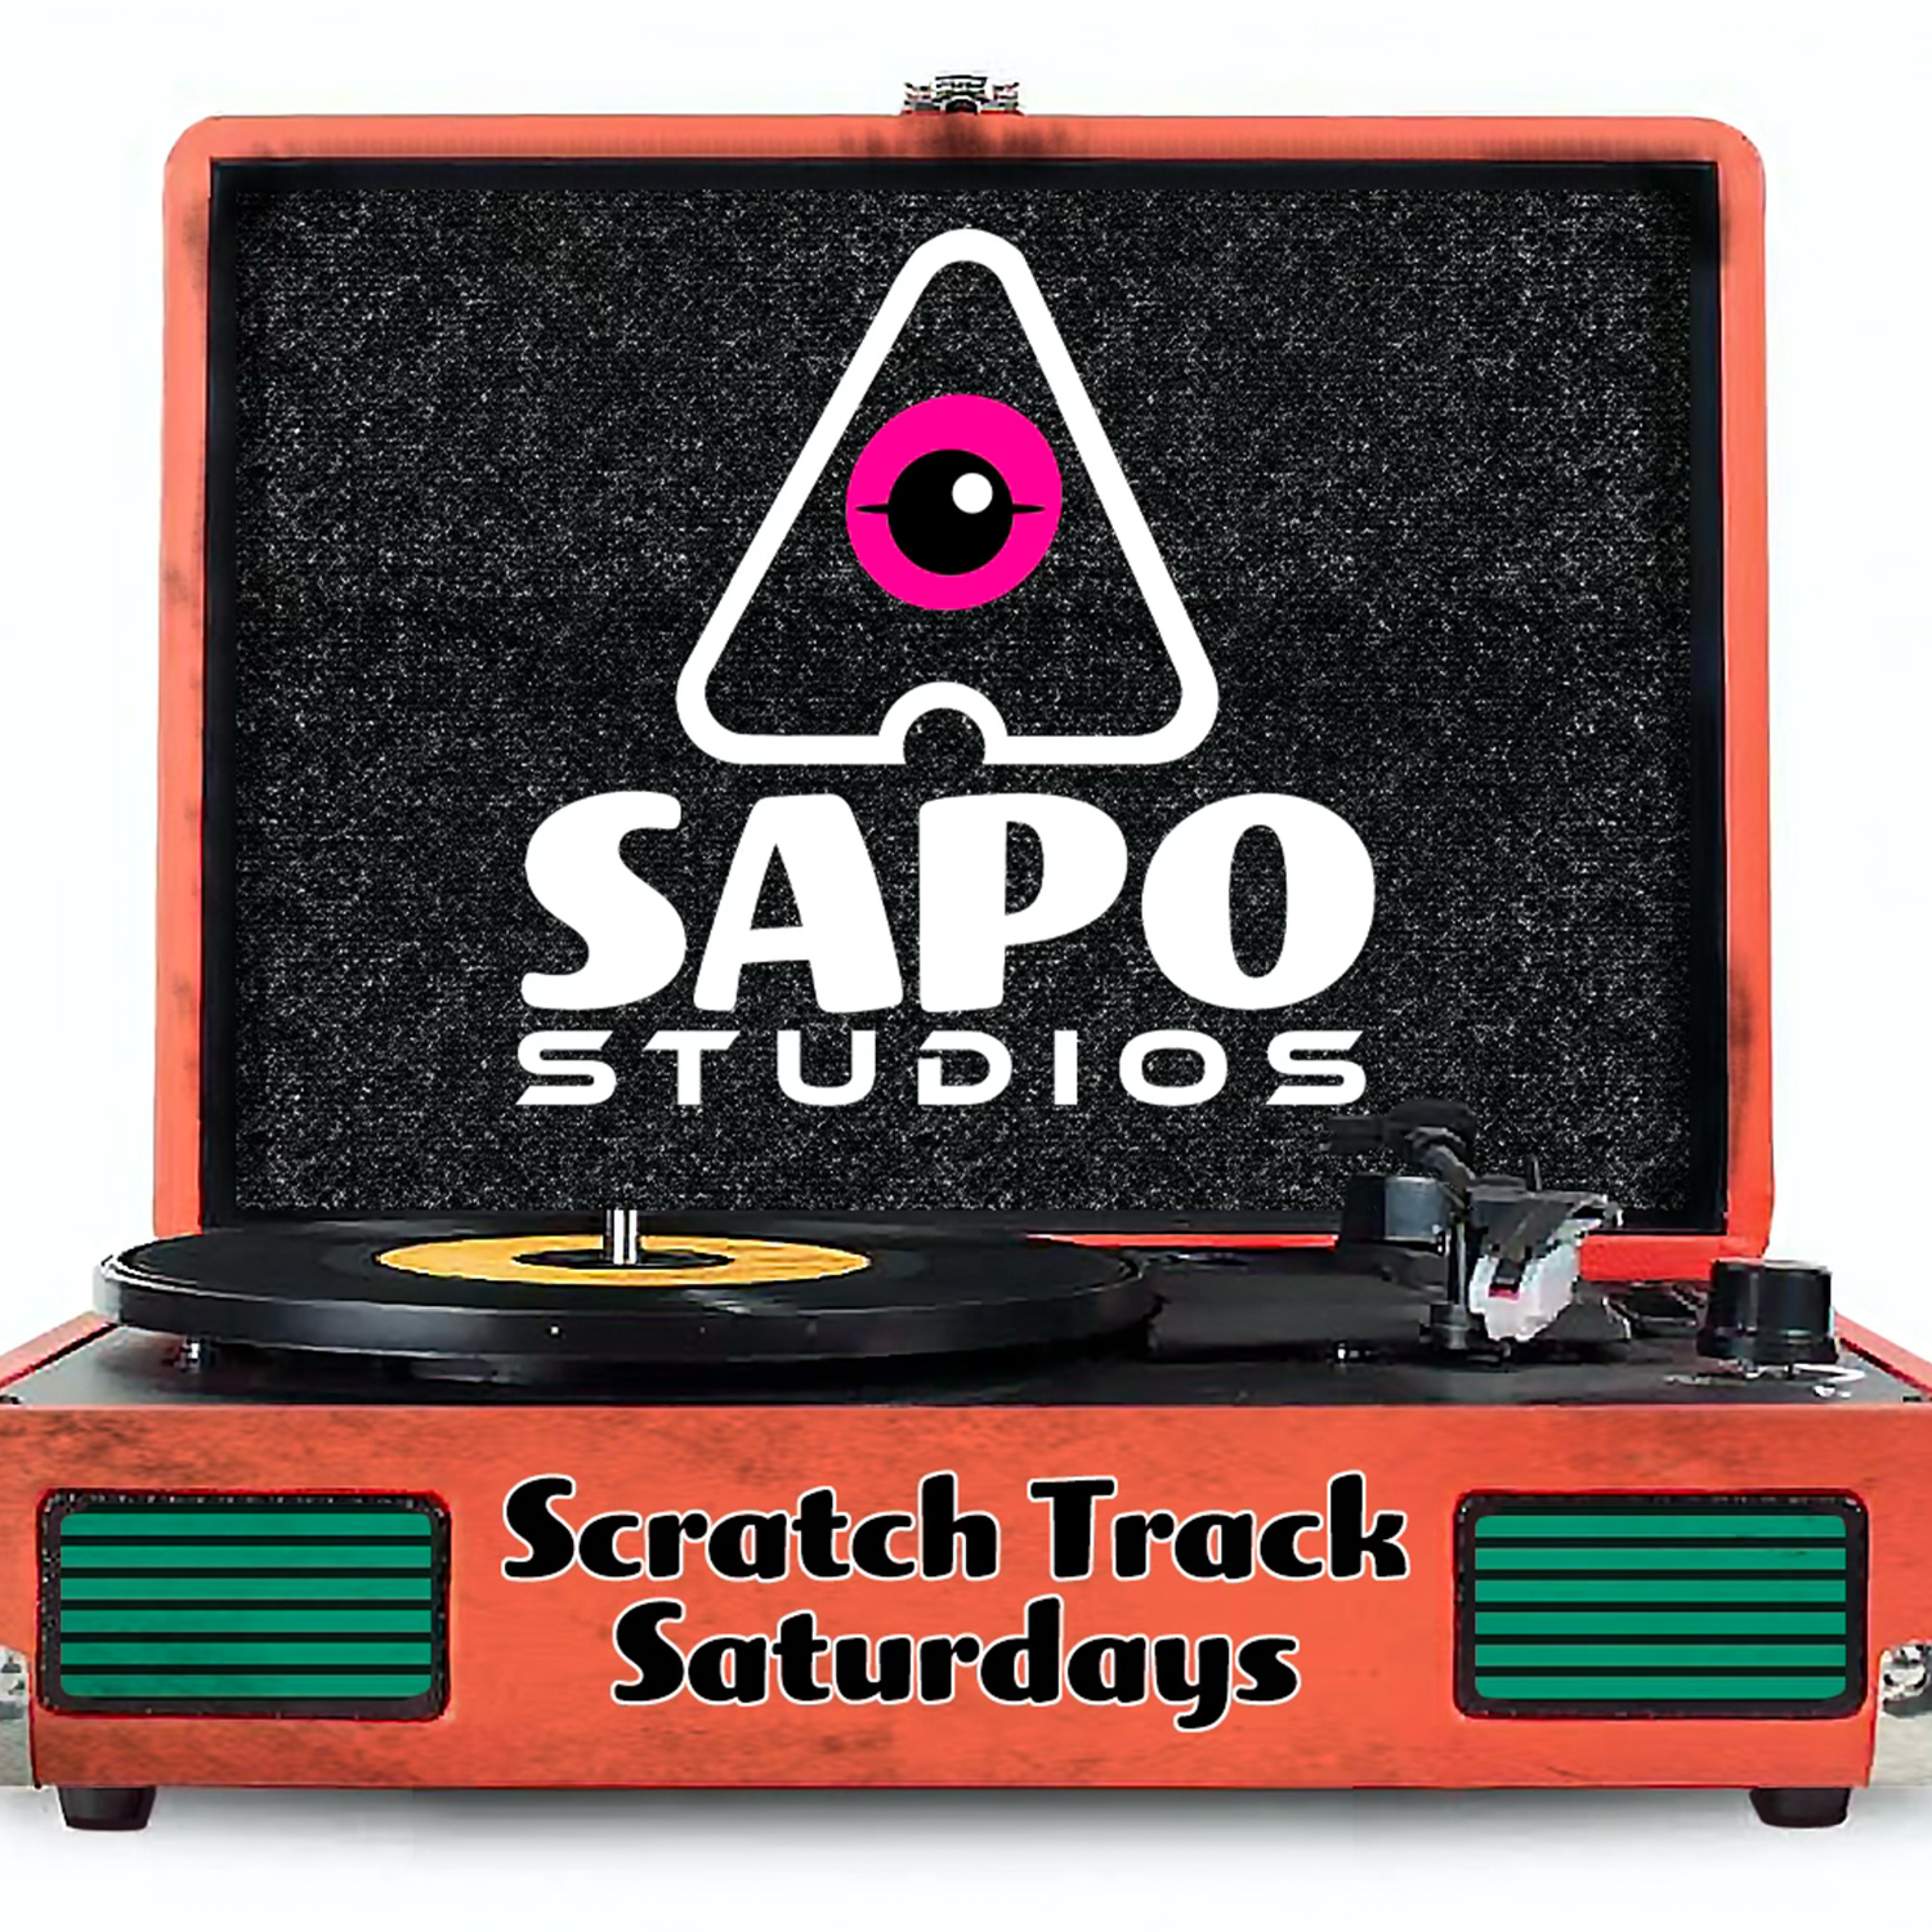 Scratch Track Saturdays